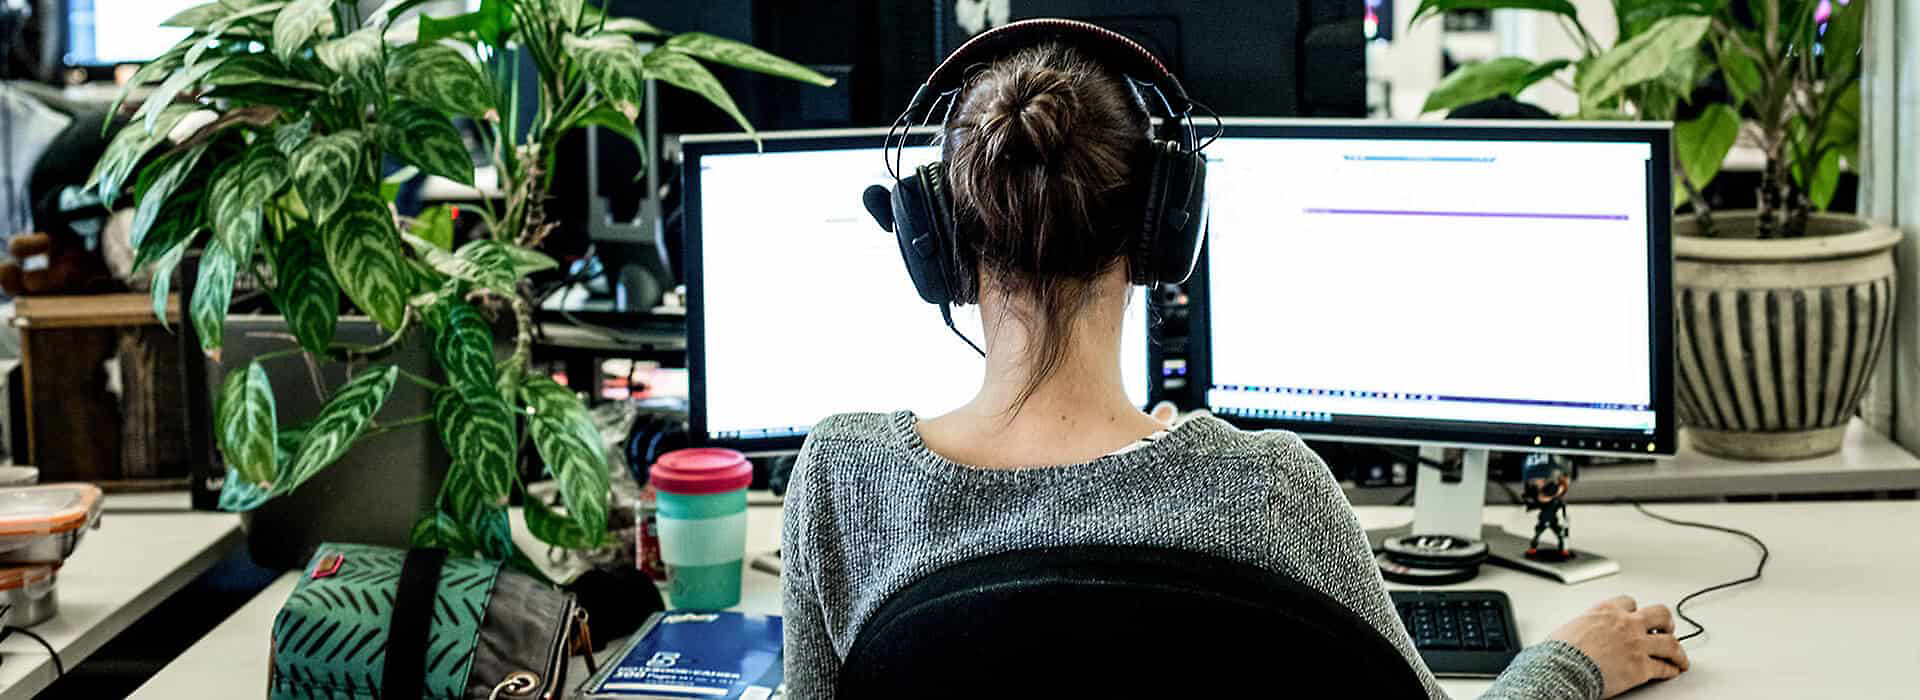 Osoba mająca słuchawki na uszach i pracująca przy biurku 